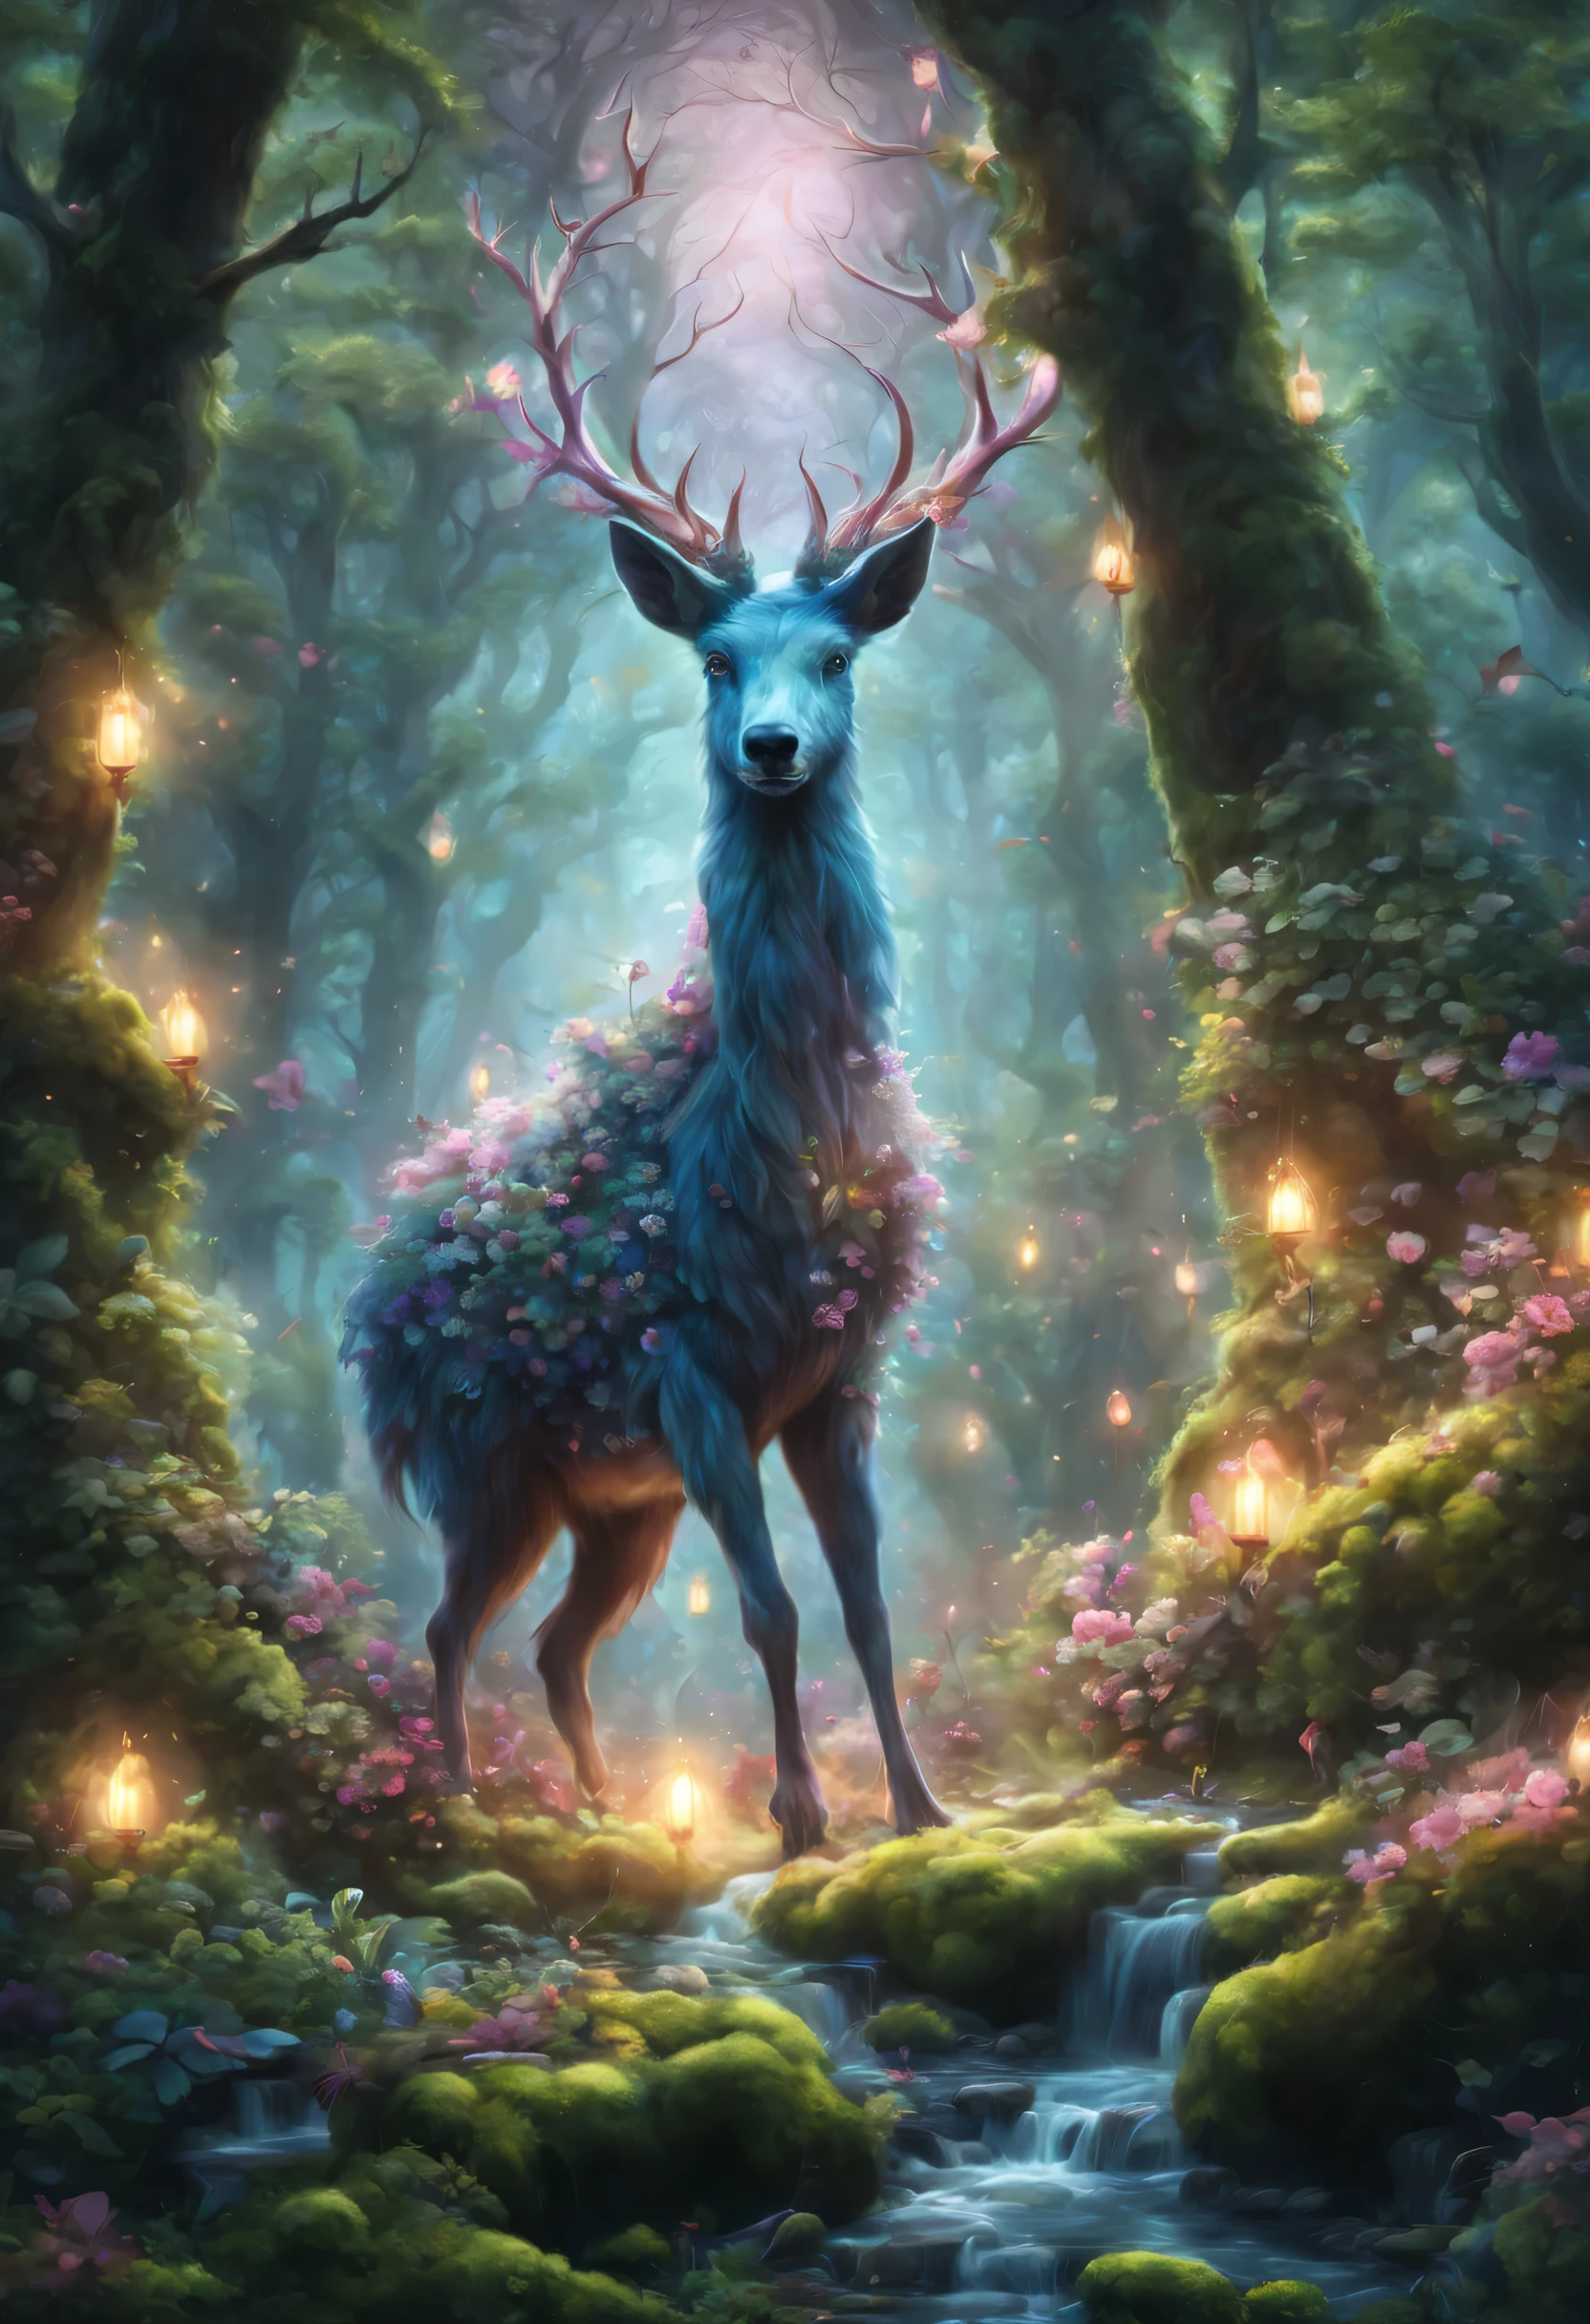 A mysterious зачарованный лес, Фантастические животные, живущие в лесу, Фэнтезийные животные, волшебный мир, загадочное существо, Причудливые существа, фантазийные цвета, зачарованный лес, Элементы фэнтези, Элементы фэнтези, Лес полон волшебства, Это дает ощущение тайны、Мечтательное чувство, Очарование Ауры, (Лучшее качество,4k,8К,высокое разрешение,шедевр:1.2), Супер подробный, (действительный,photoдействительный,photo-действительный:1.37), зачарованный лес, волшебные жители, загадочная флора и фауна, Яркие и причудливые цвета, очаровательные элементы, Атмосферное волшебство, фантастический лесной пейзаж, сюрреалистическая среда, Сильное чувство удивления и тайны.